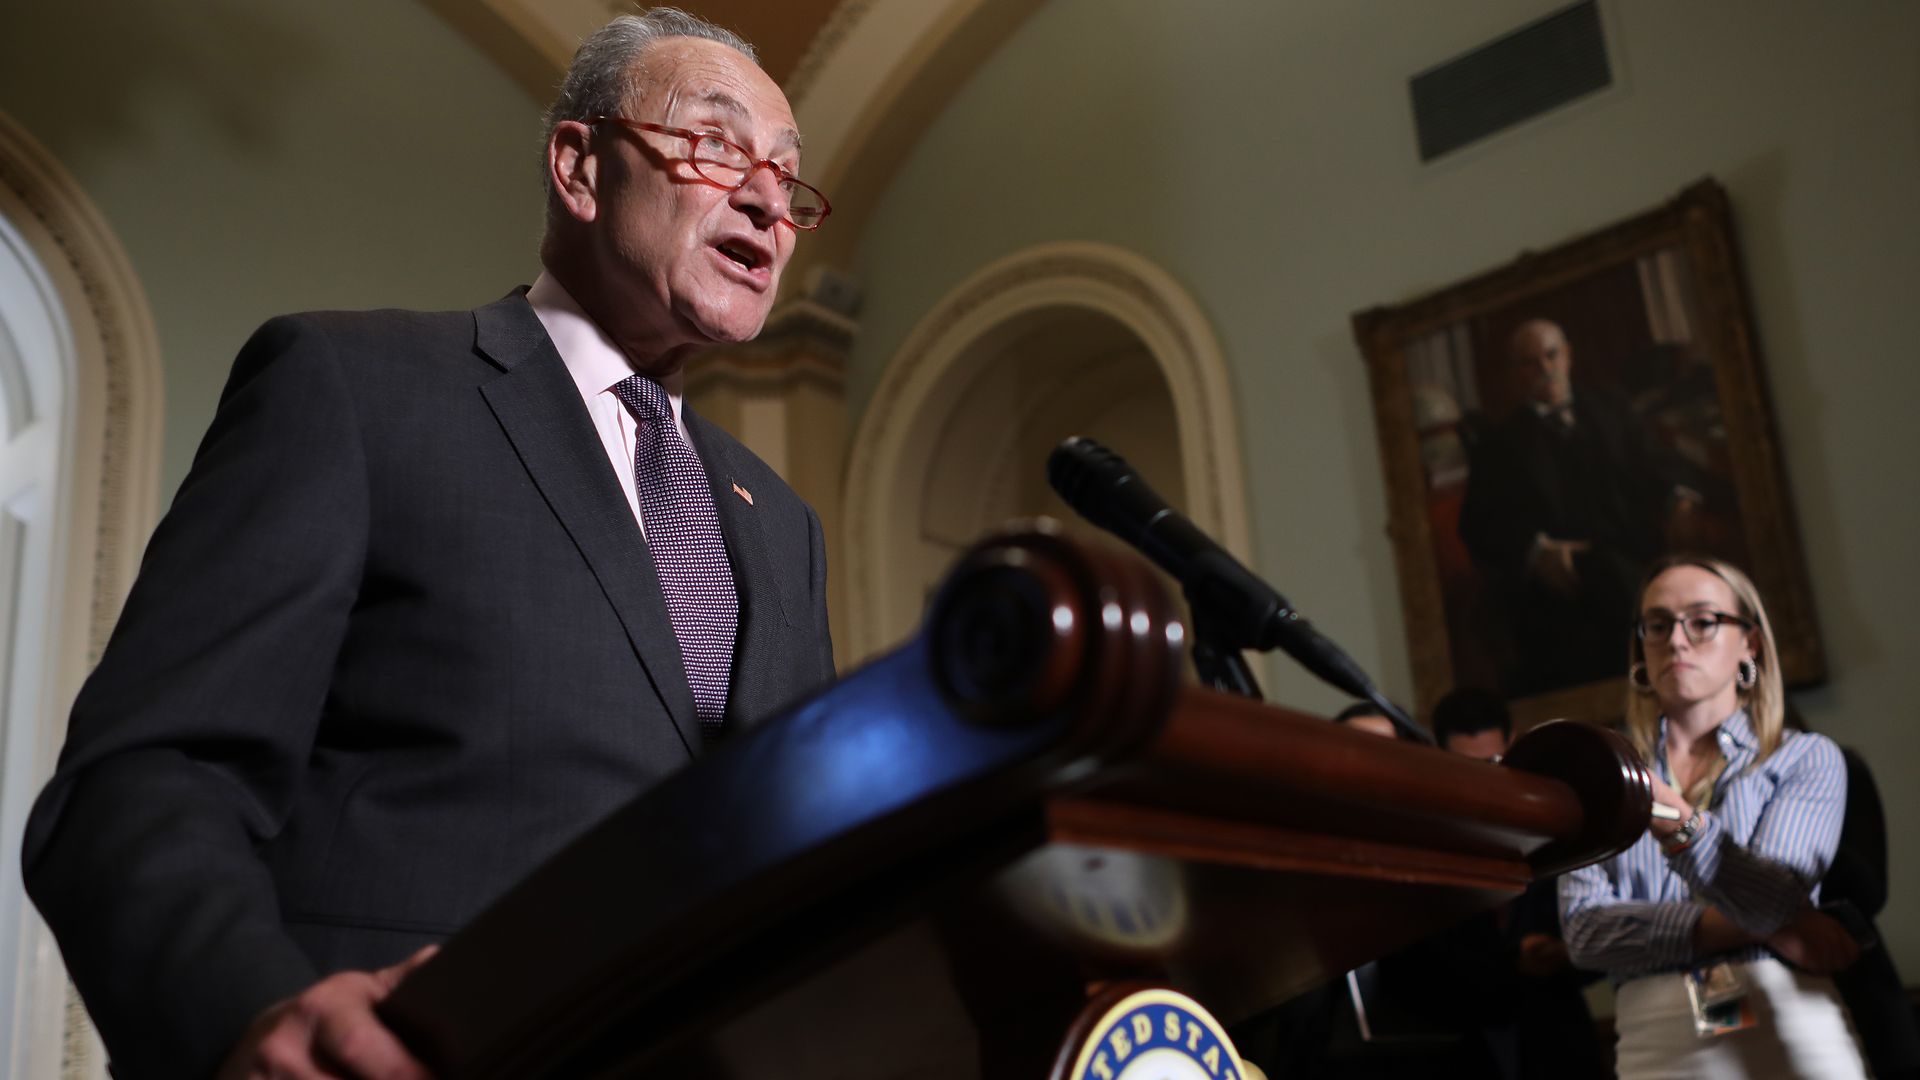 Democrats hint at 2021 climate change bill if they win Senate - Axios